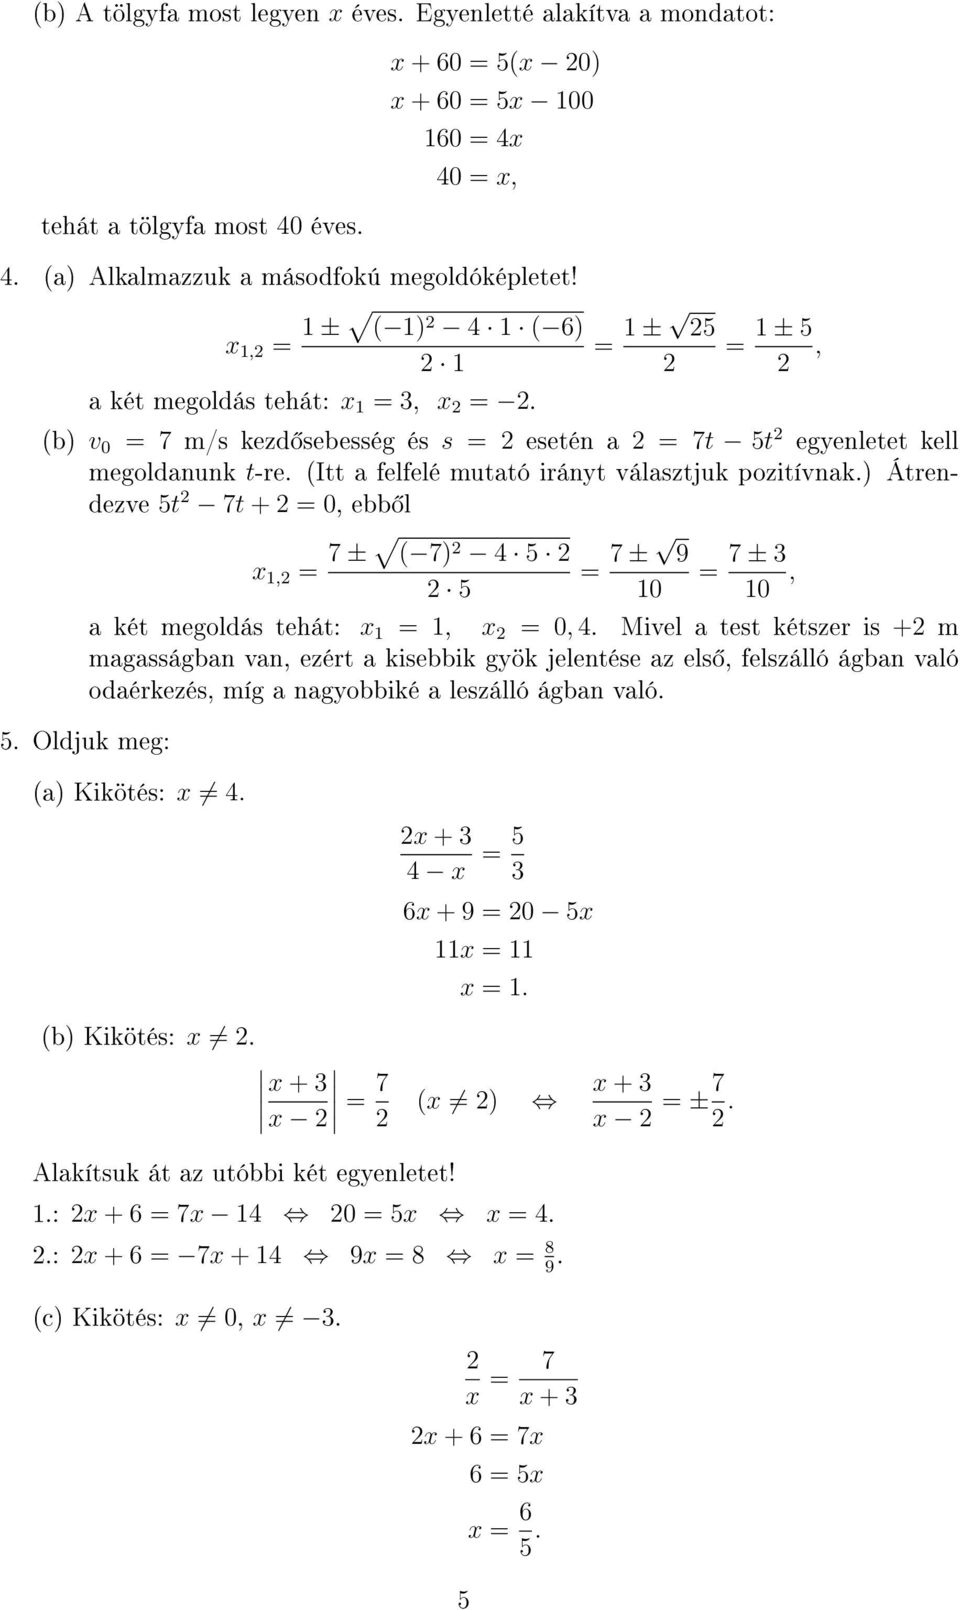 ) Átrendezve 5t 7t + 0, ebb l x, 7 ± ( 7) 4 5 5 7 ± 9 0 7 ± 3 0, a két megoldás tehát: x, x 0, 4.